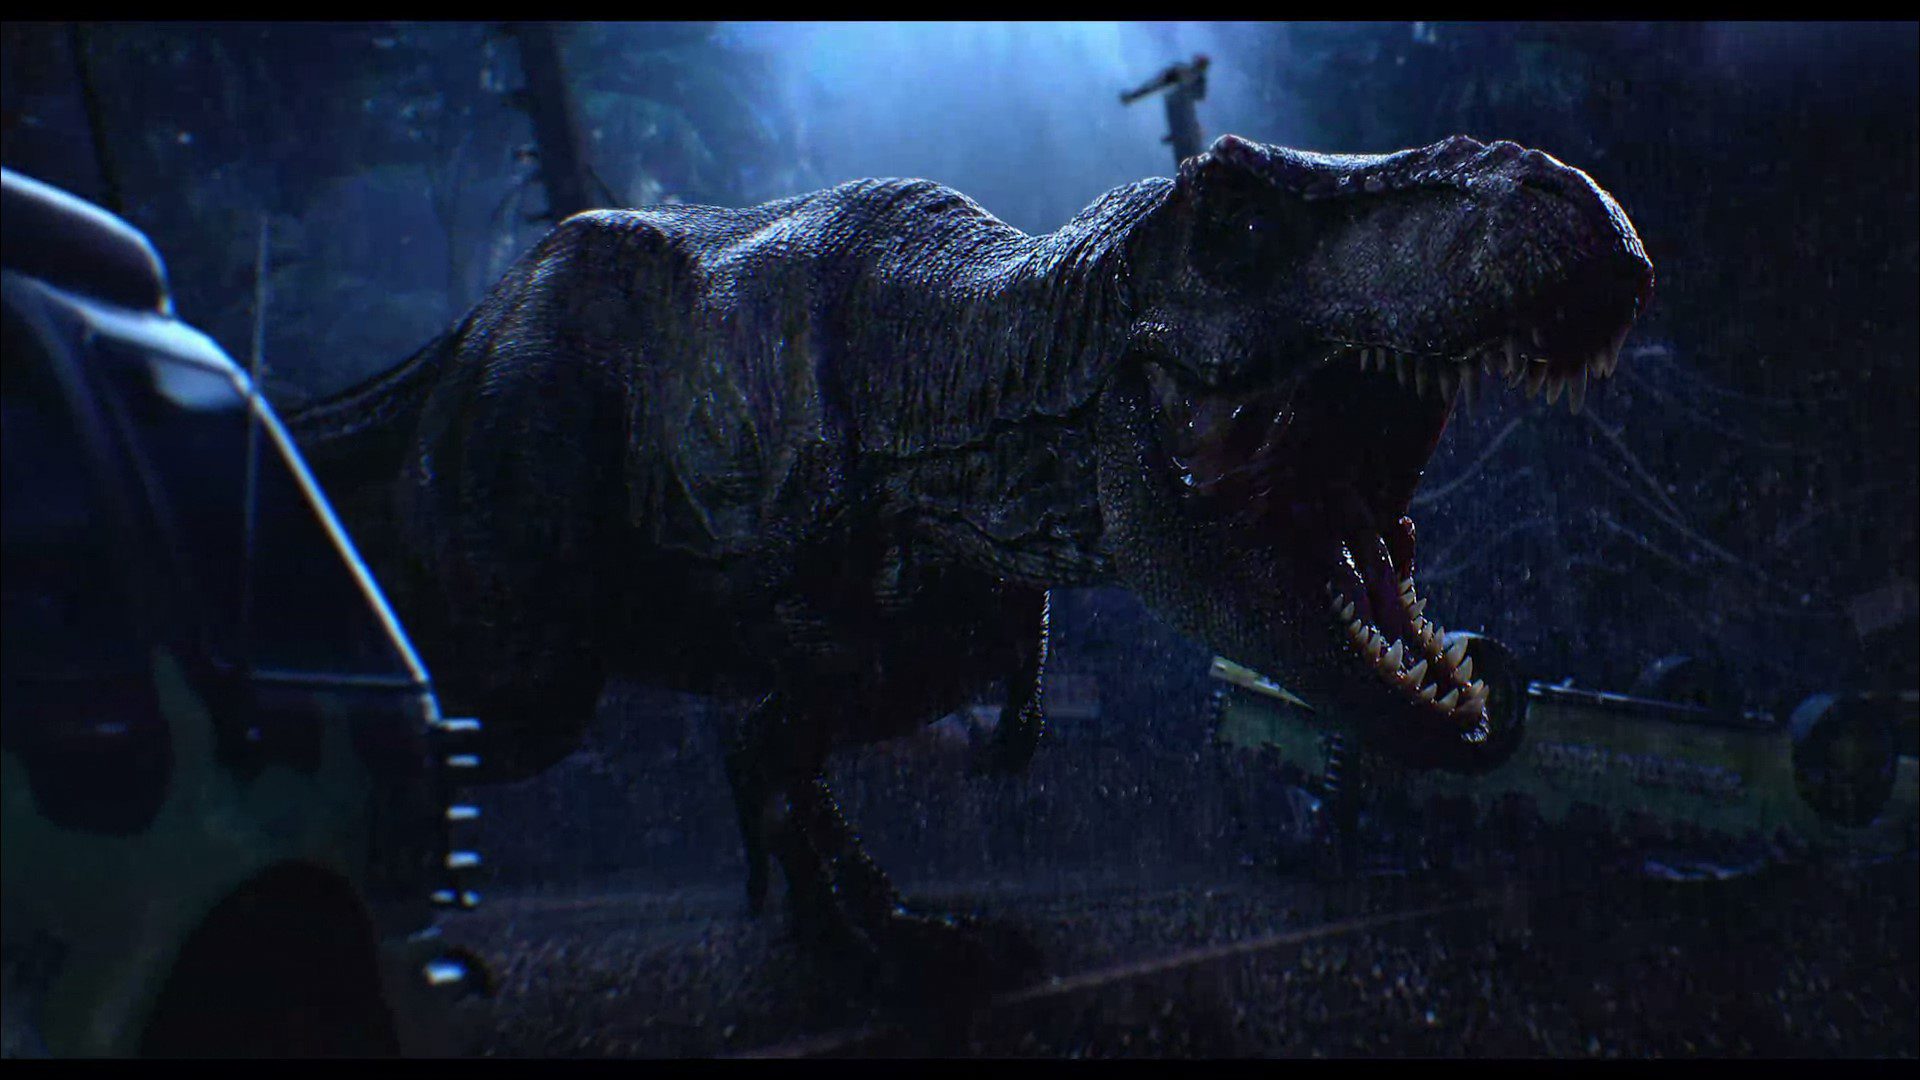 Análisis de Jurassic World Evolution 2 - Analizo Jurassic World Evolution 2, nuevos escenarios y más amplios, mayor número de especies, nuevas mecánicas, edificios y mucho más.